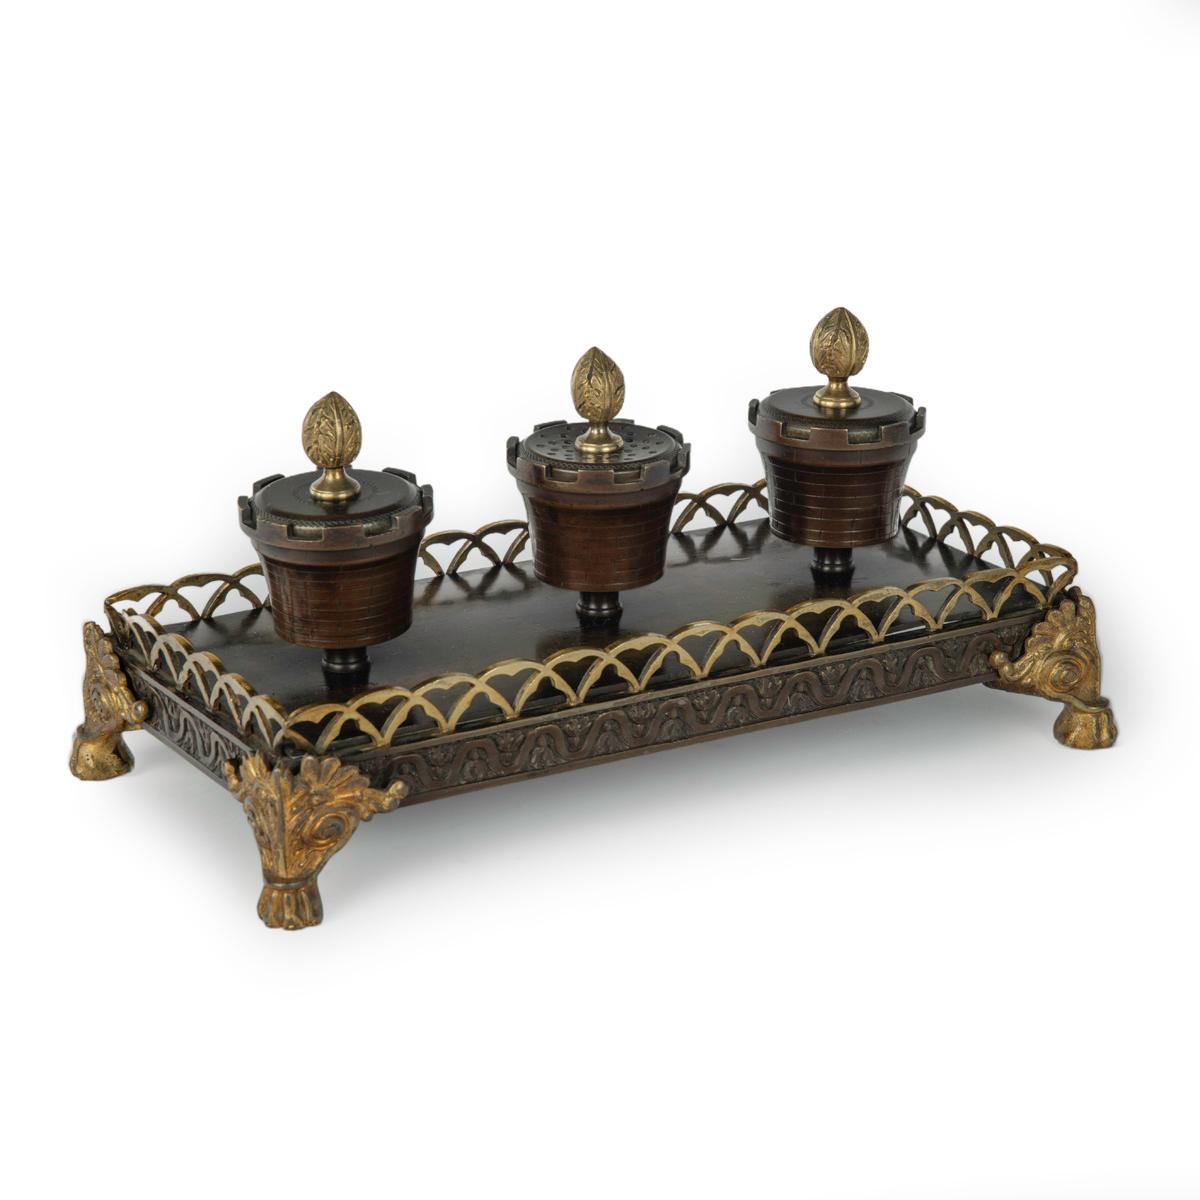 Ein Louis-Philippe-Schreibtischset aus Bronze und Ormolu, bestehend aus zwei Tintenfässern und einem Pulverstreuer in Form von zinnenbewehrten Urnen mit Anthemion-Knospen, alle auf einem rechteckigen Sockel mit einer  Galerie und aufgesetzte